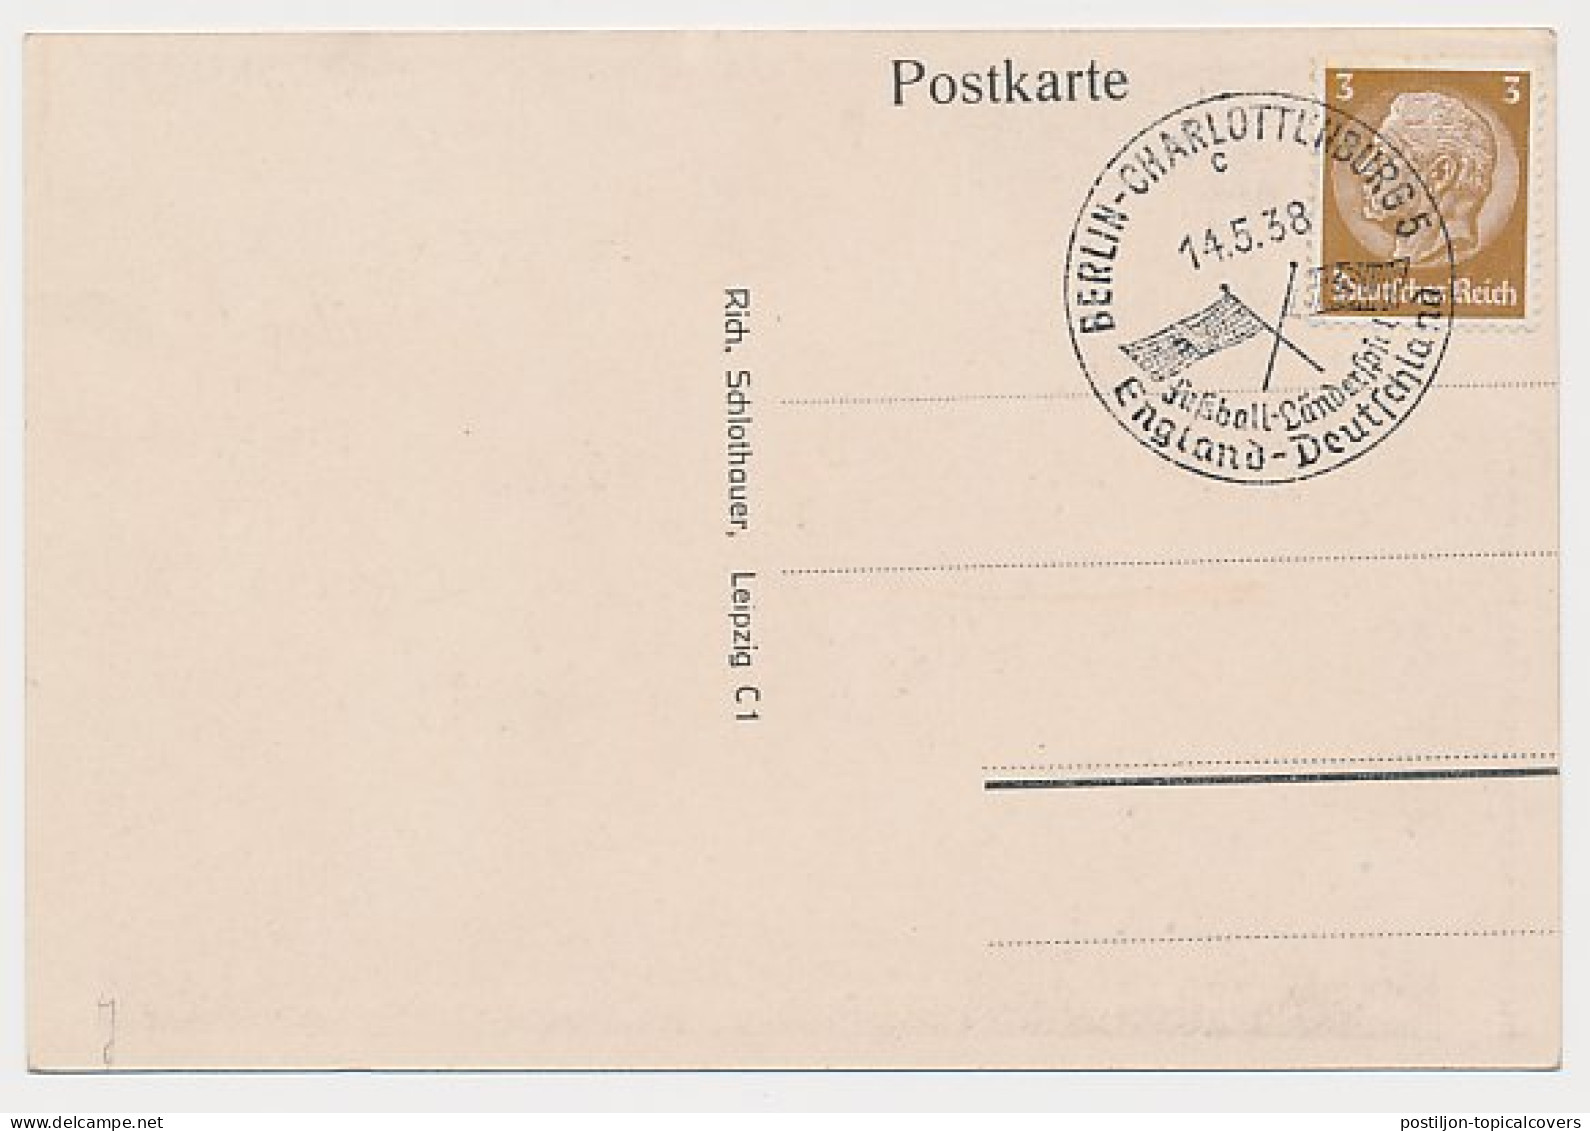 Postcard / Postmark Deutsches Reich / Germany 1938 Adolf Hitler - Militaria